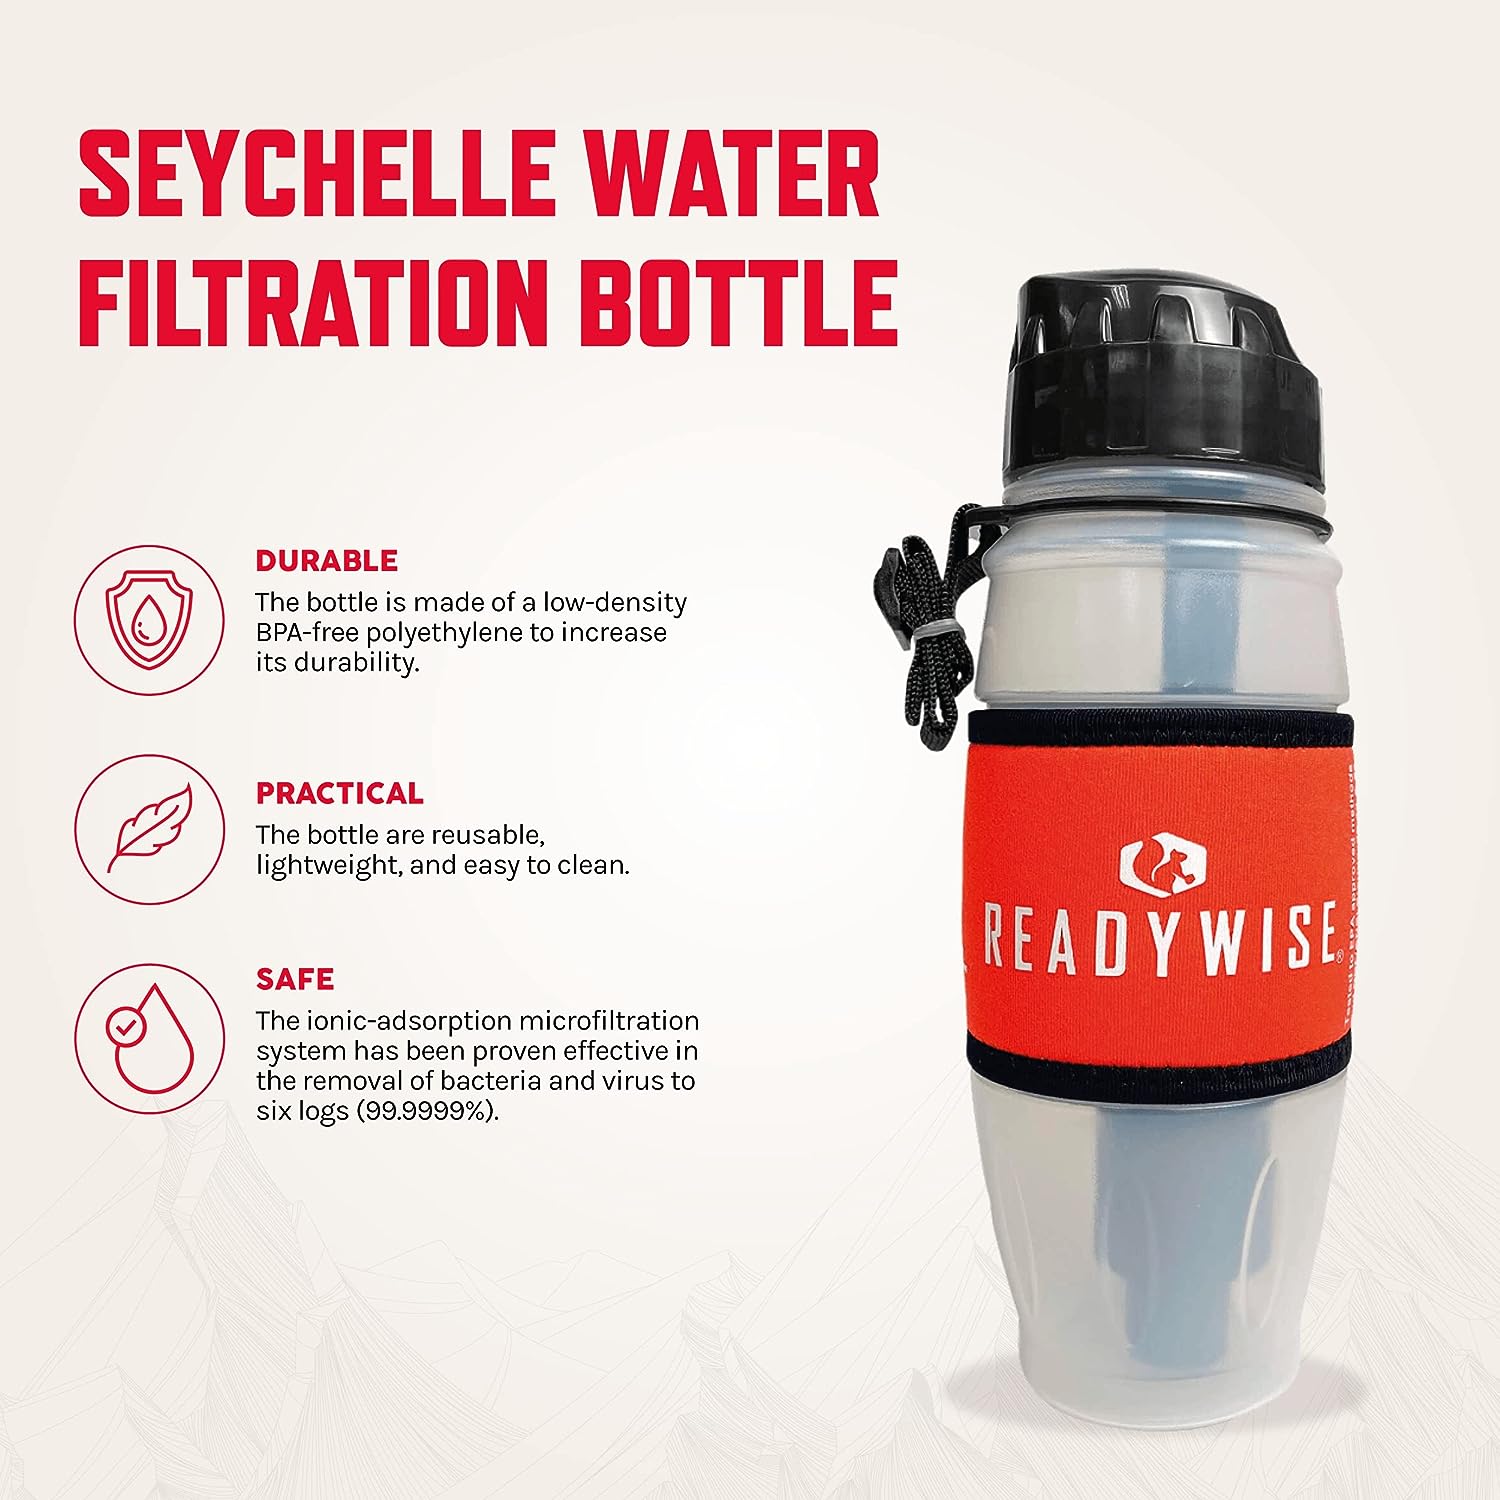 water-filter-bottle-seychelle-water-filtration